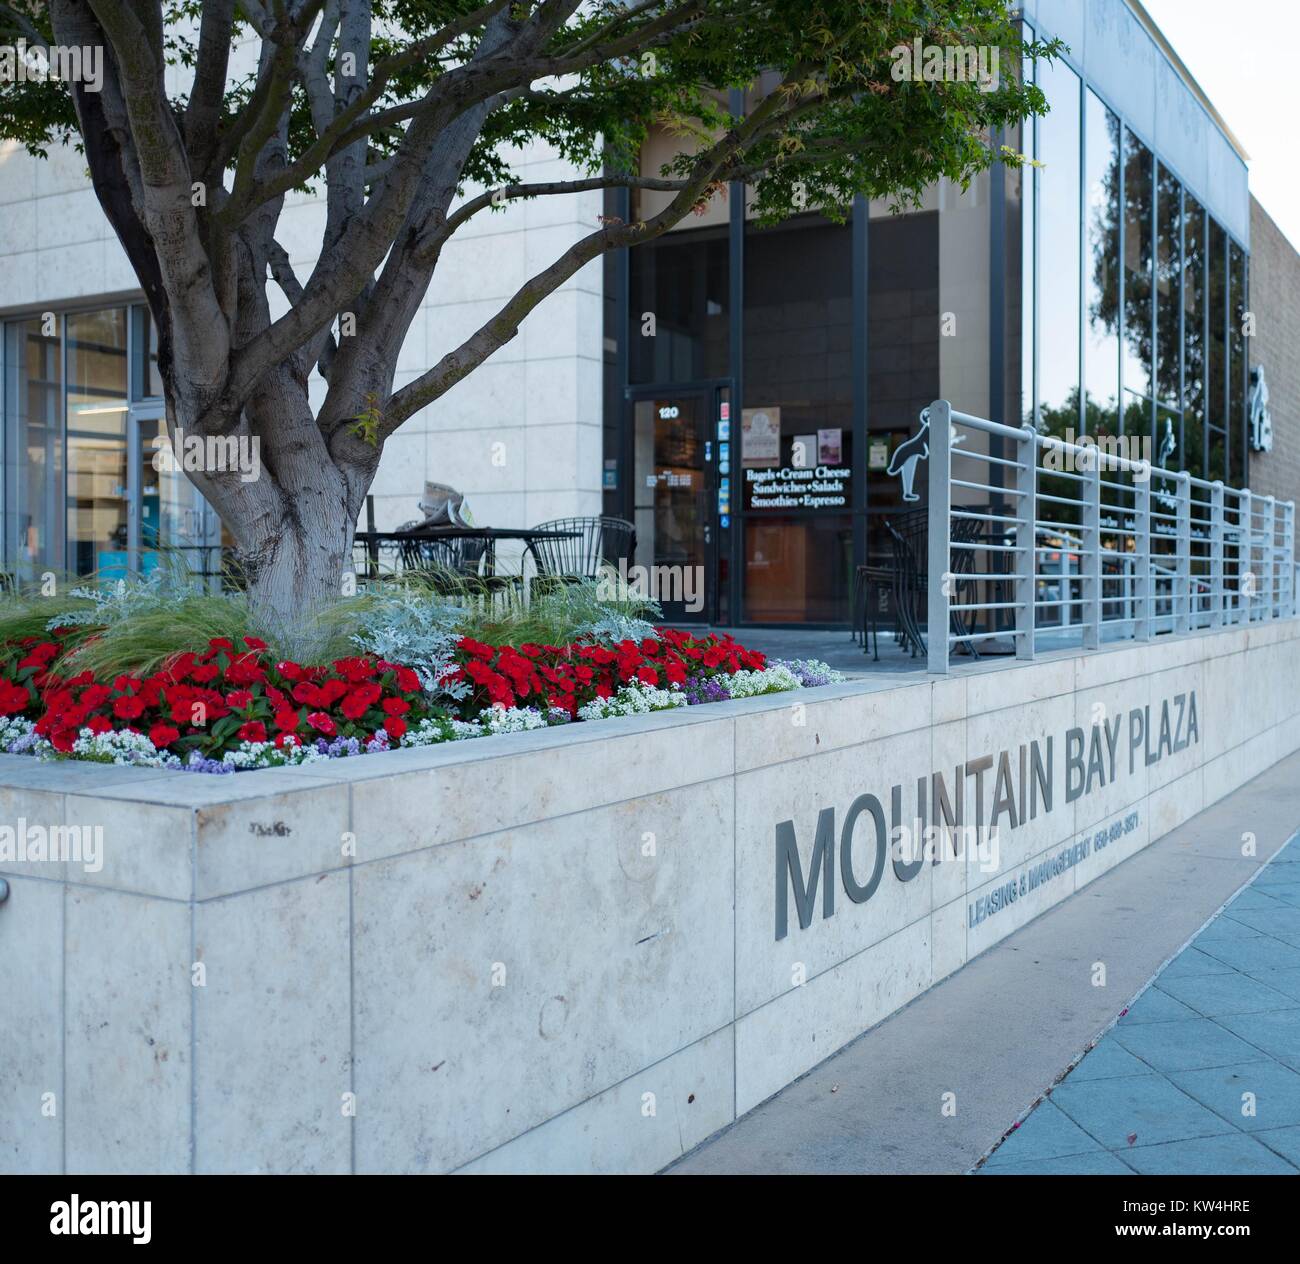 Mountain Bay Plaza à 444 Castro Street, la maison d'incubateur d'entreprises 500, Redhat Inc, et plusieurs autres sociétés technologiques, dans la Silicon Valley ville de Mountain View, Californie, le 24 août 2016. Banque D'Images